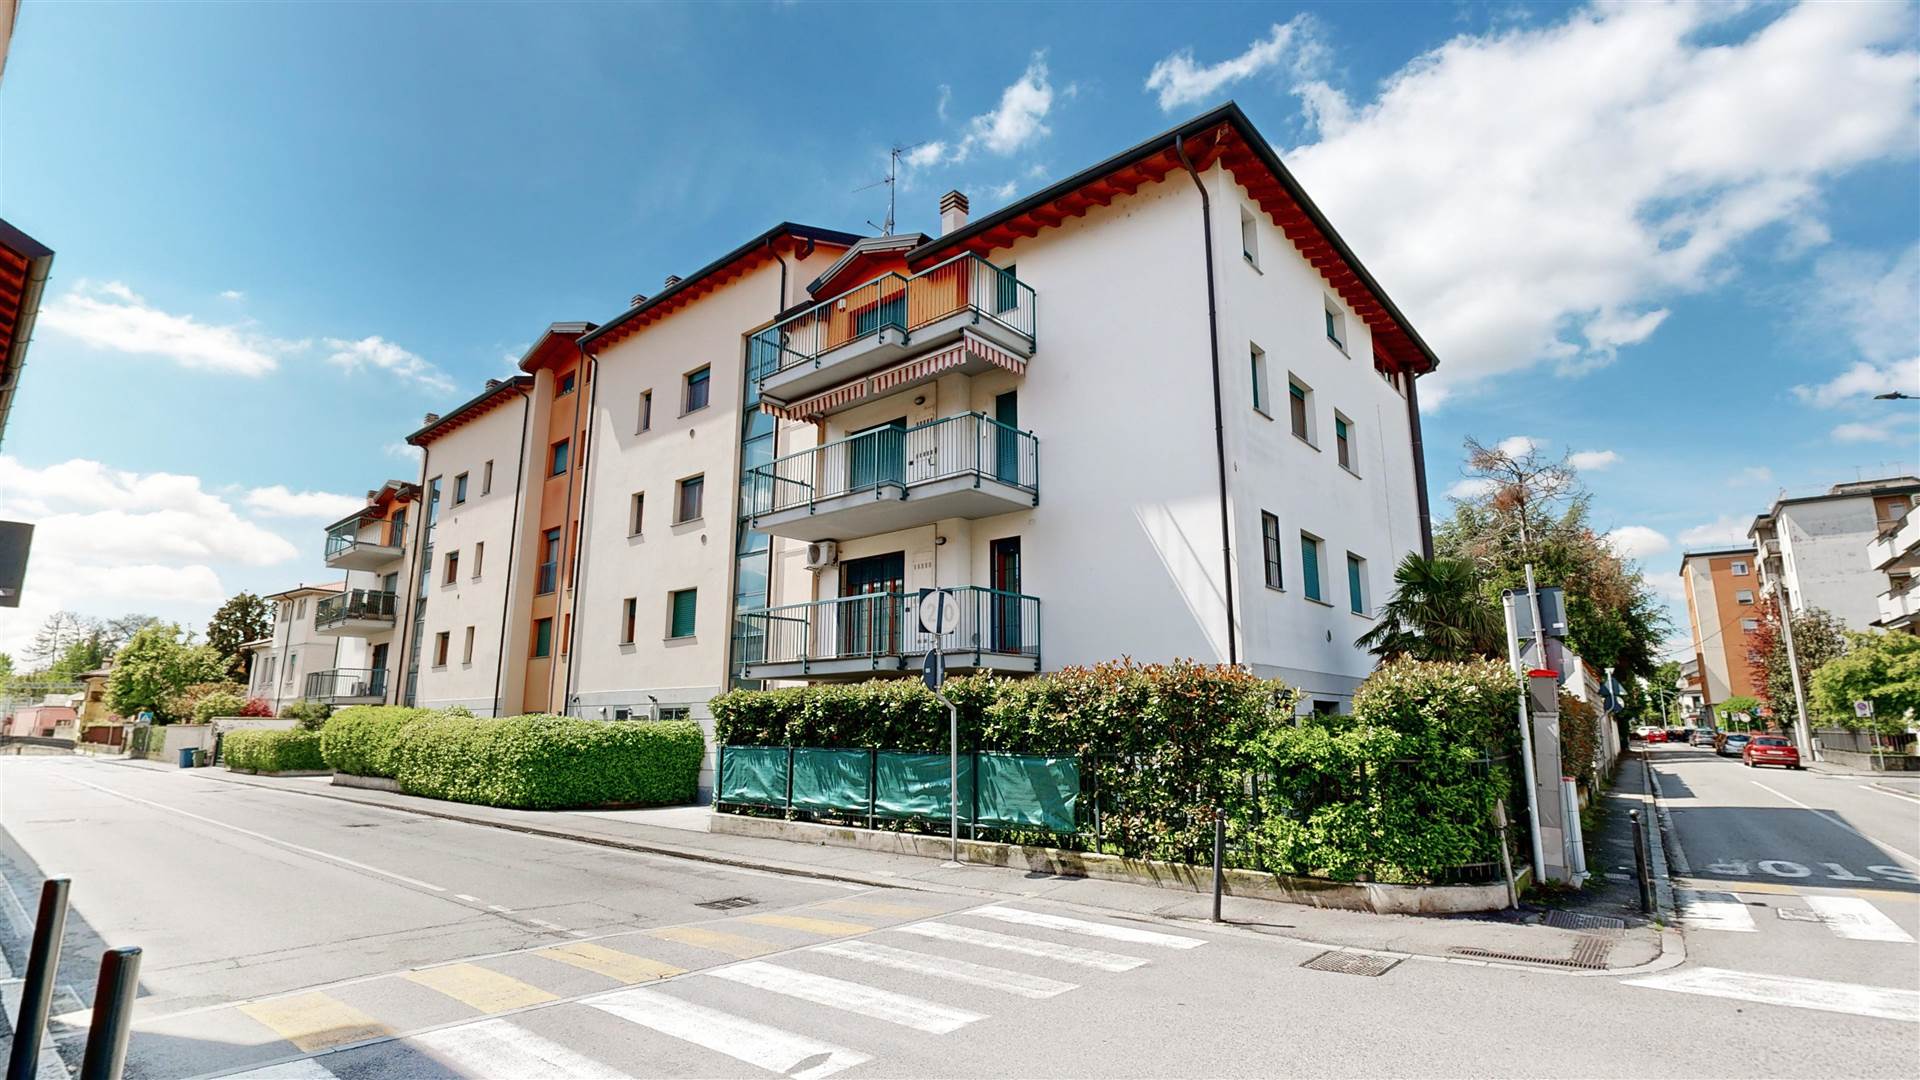 Nel cuore di Melzo, in via Gorizia, sorge un bellissimo contesto: un luminoso e spazioso appartamento duplex all'ultimo piano, che incanta con la sua eleganza e funzionalità. Con i suoi generosi 160 